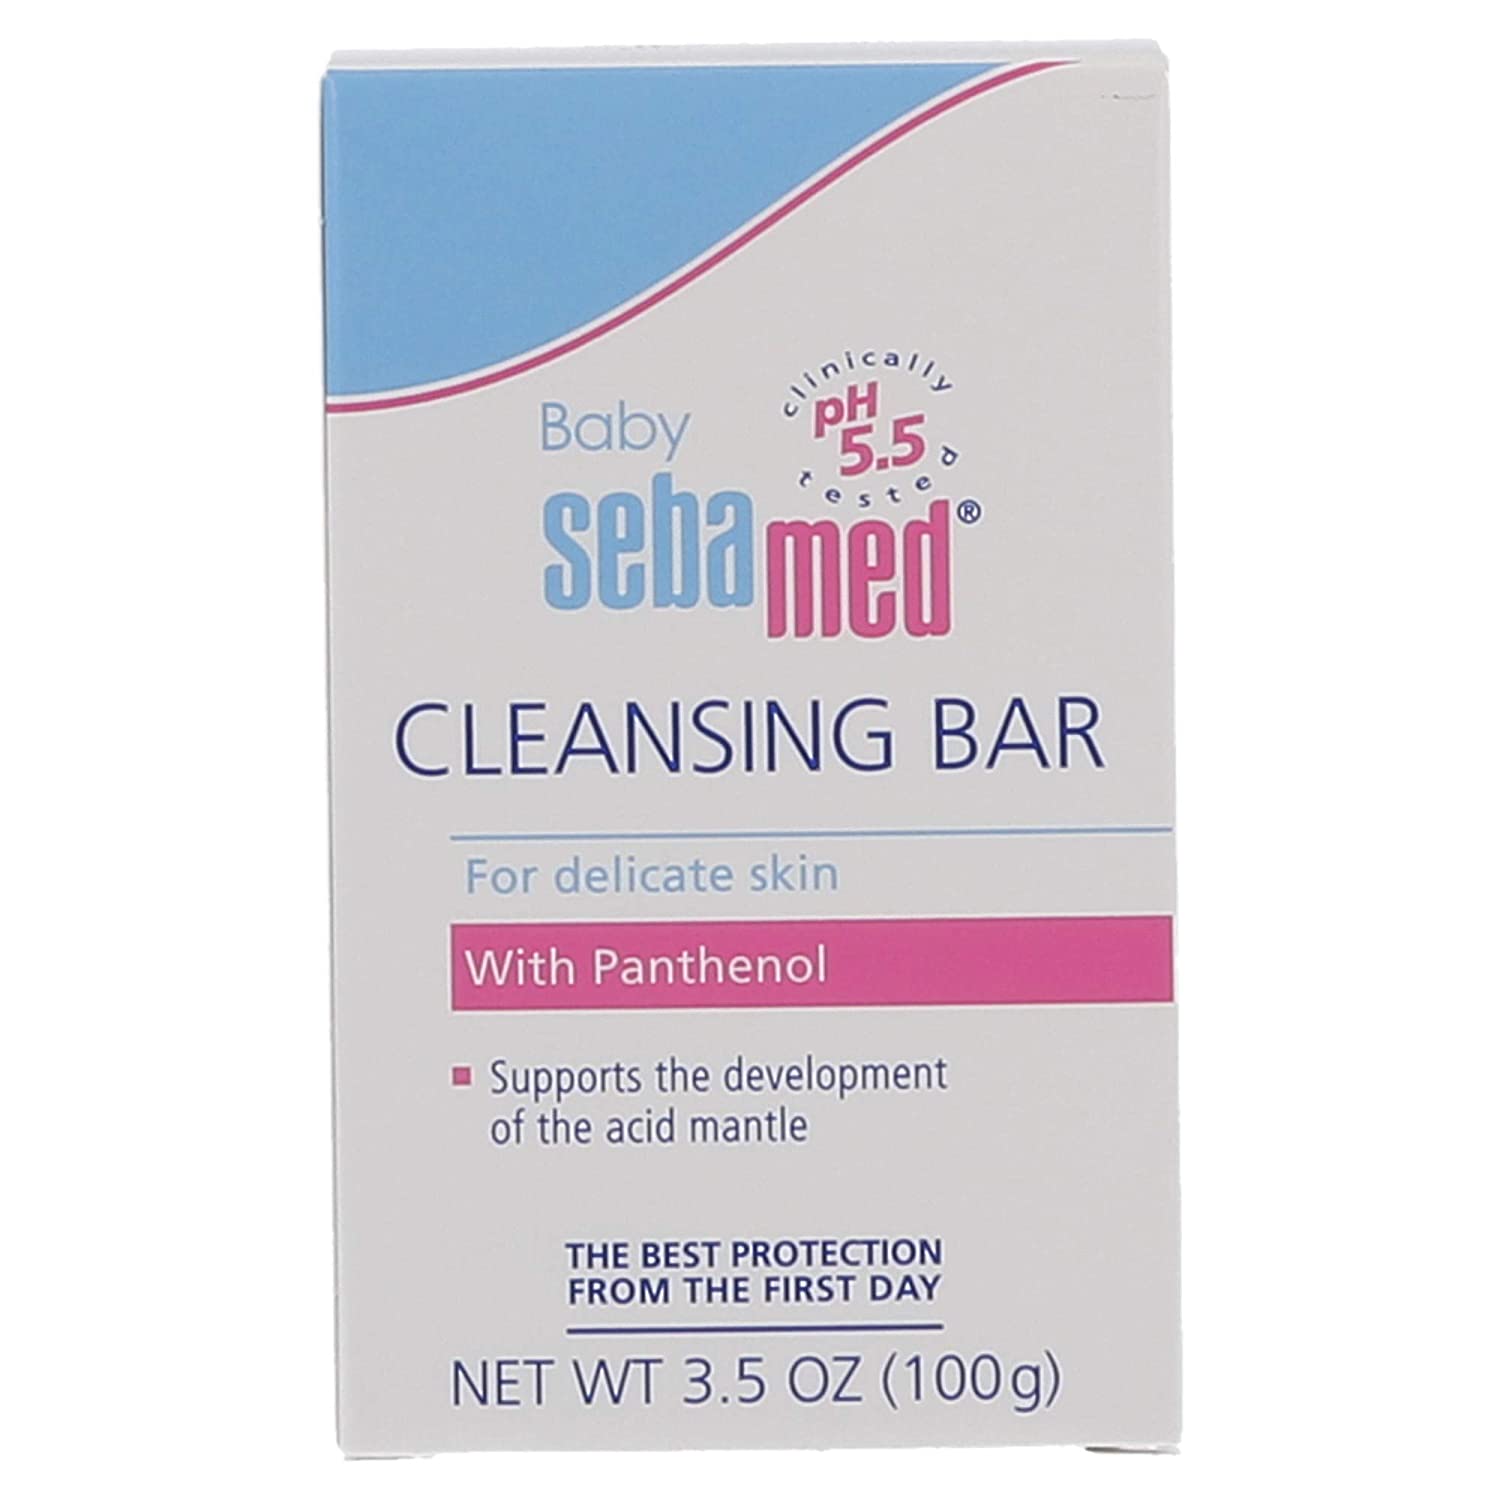 Sebamed Baby Cleansing Bar - 100 g